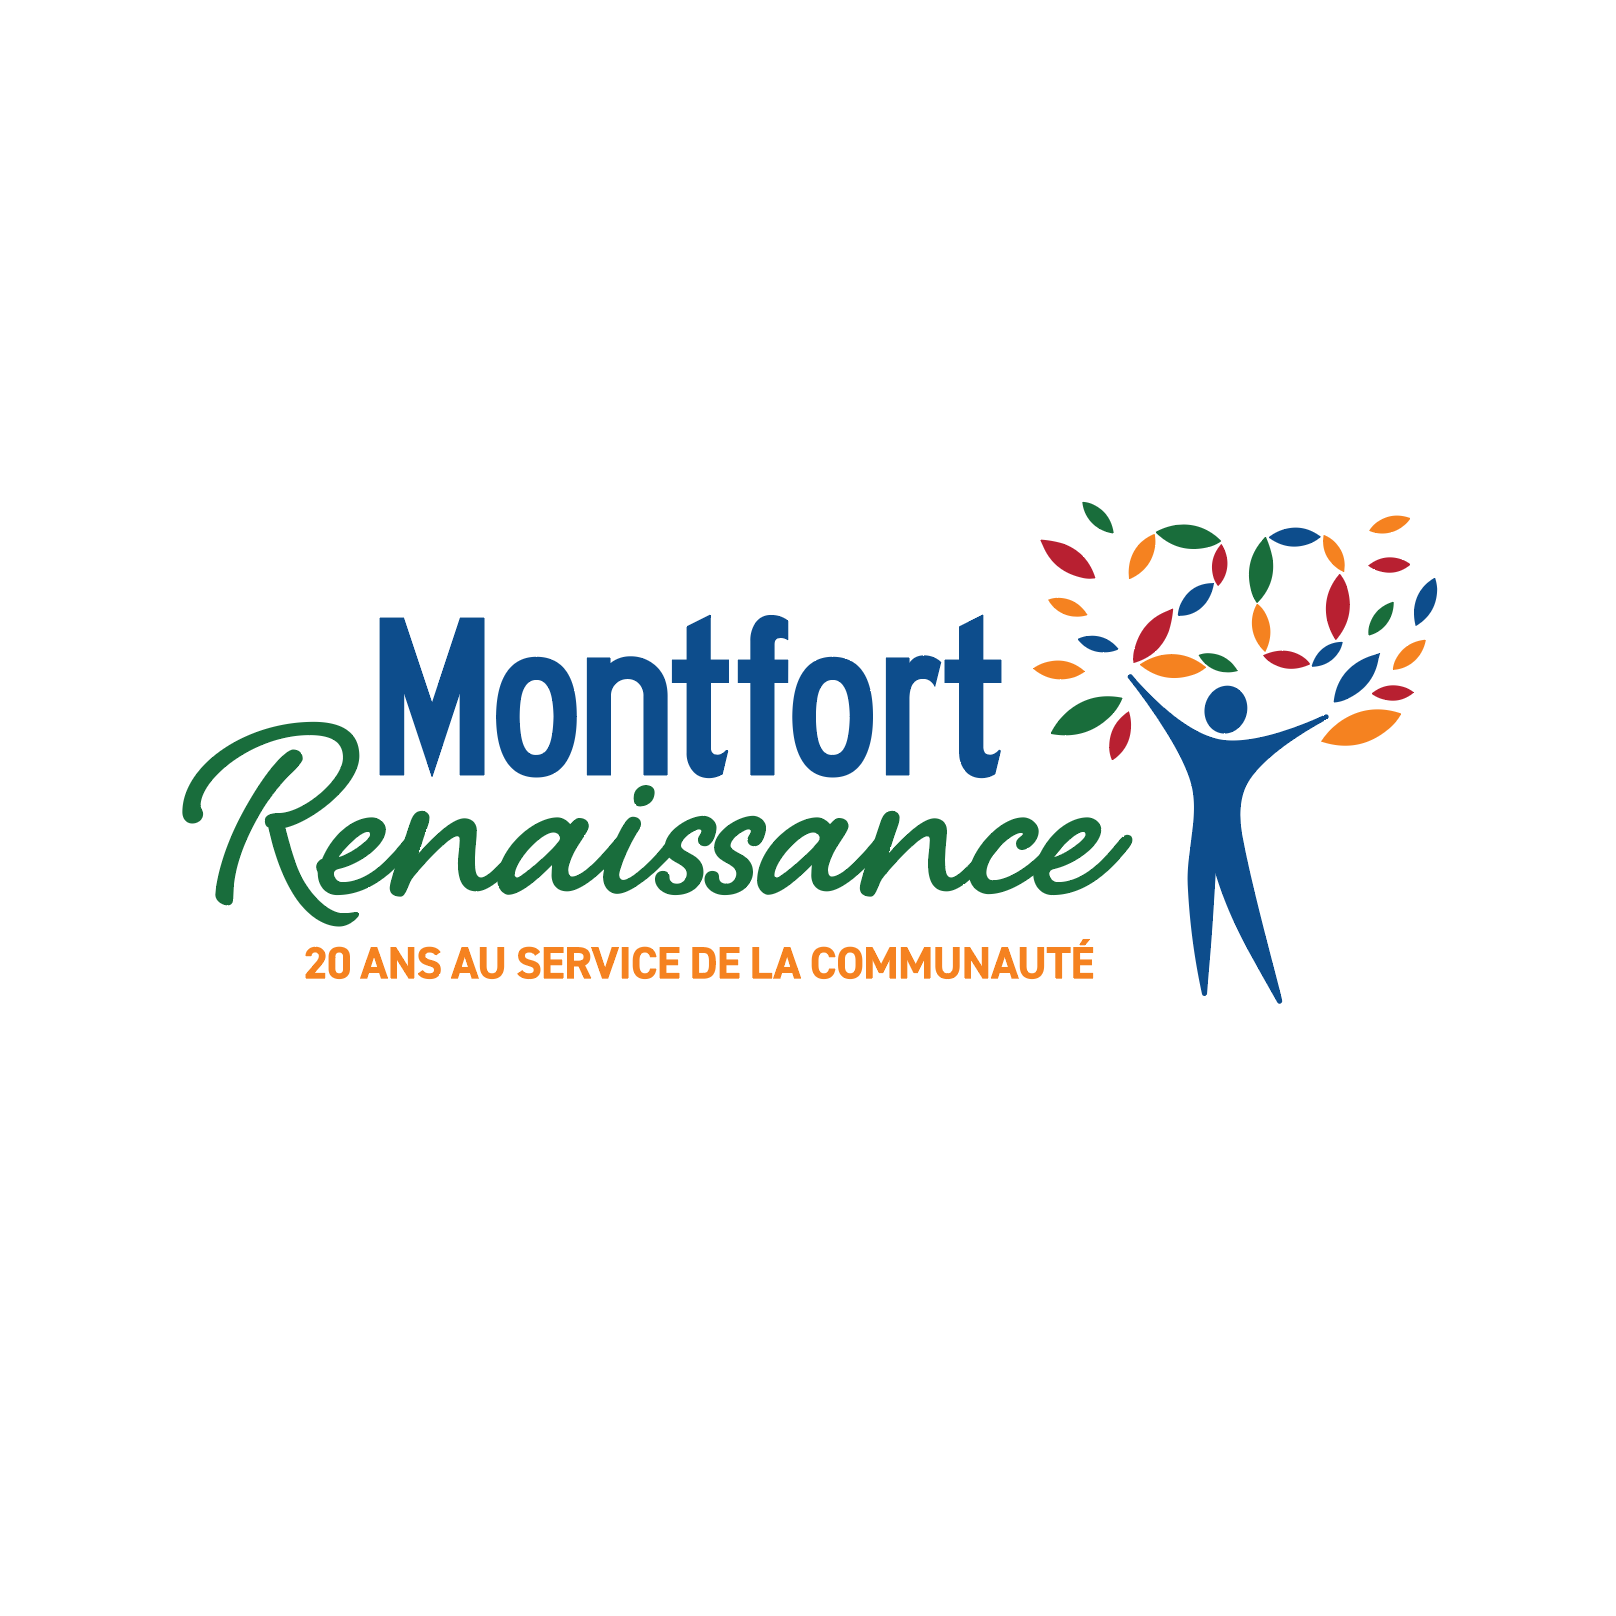 Montfort Renaissance Logo | Brand